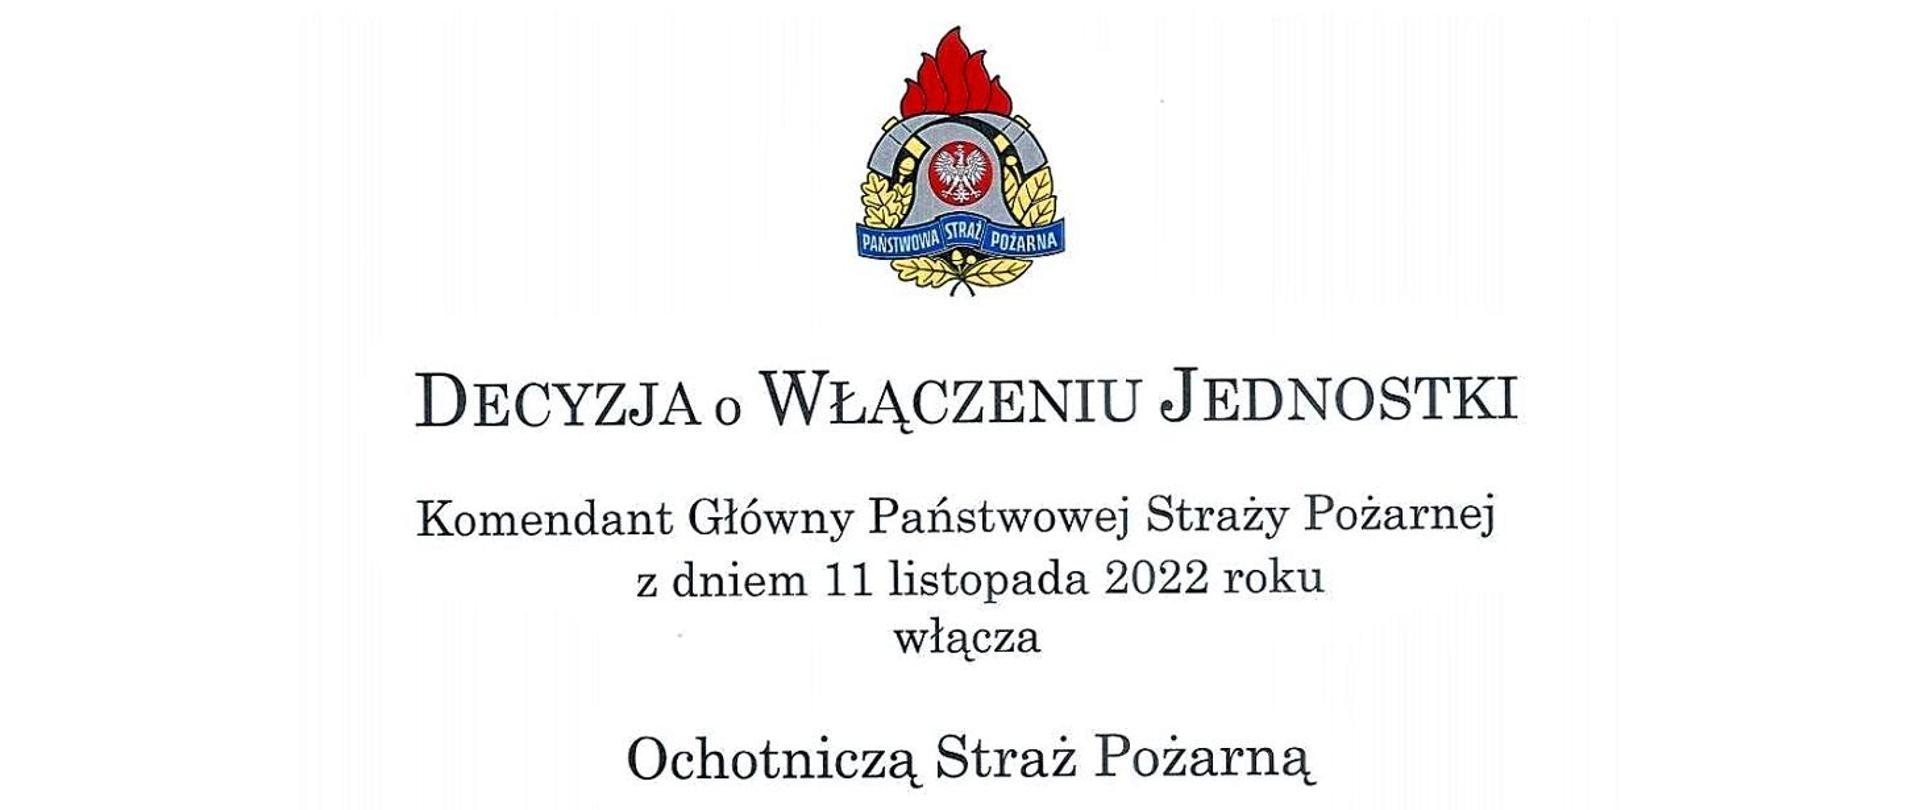 19 jednostek OSP z Mazowsza włączone do Krajowego Systemu Ratowniczo-Gaśniczego